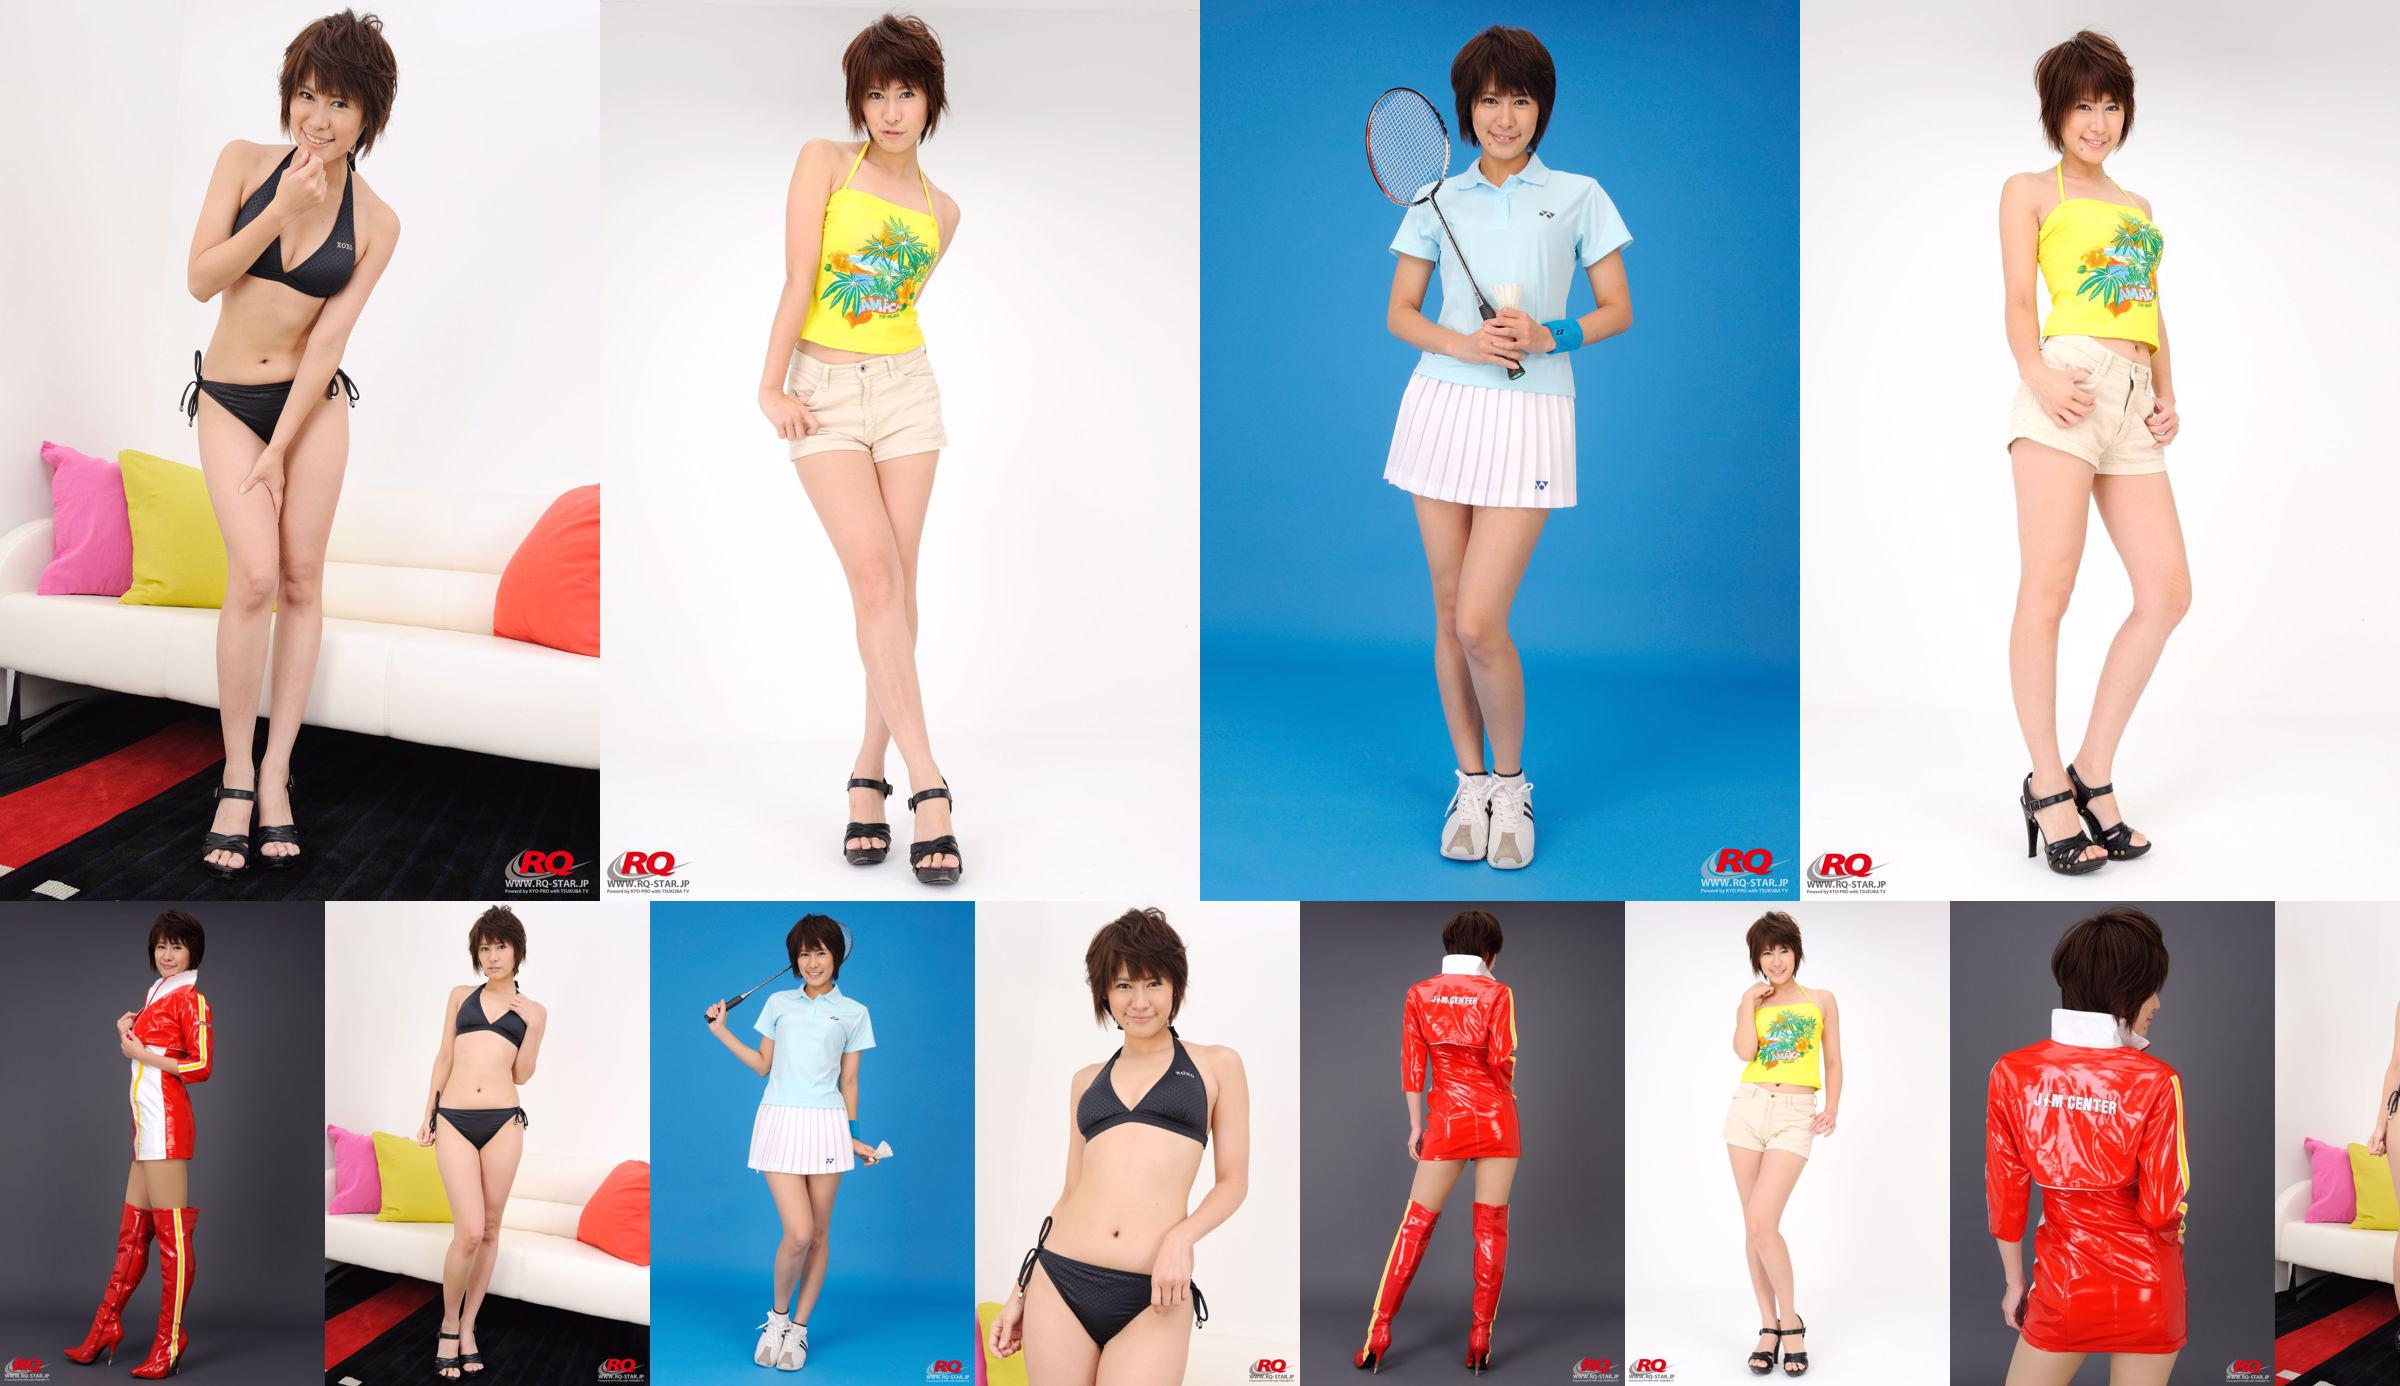 [RQ-STAR] NO.00081 Fujiwara Akiko Badminton Wear série de roupas esportivas No.5edb6a Página 16